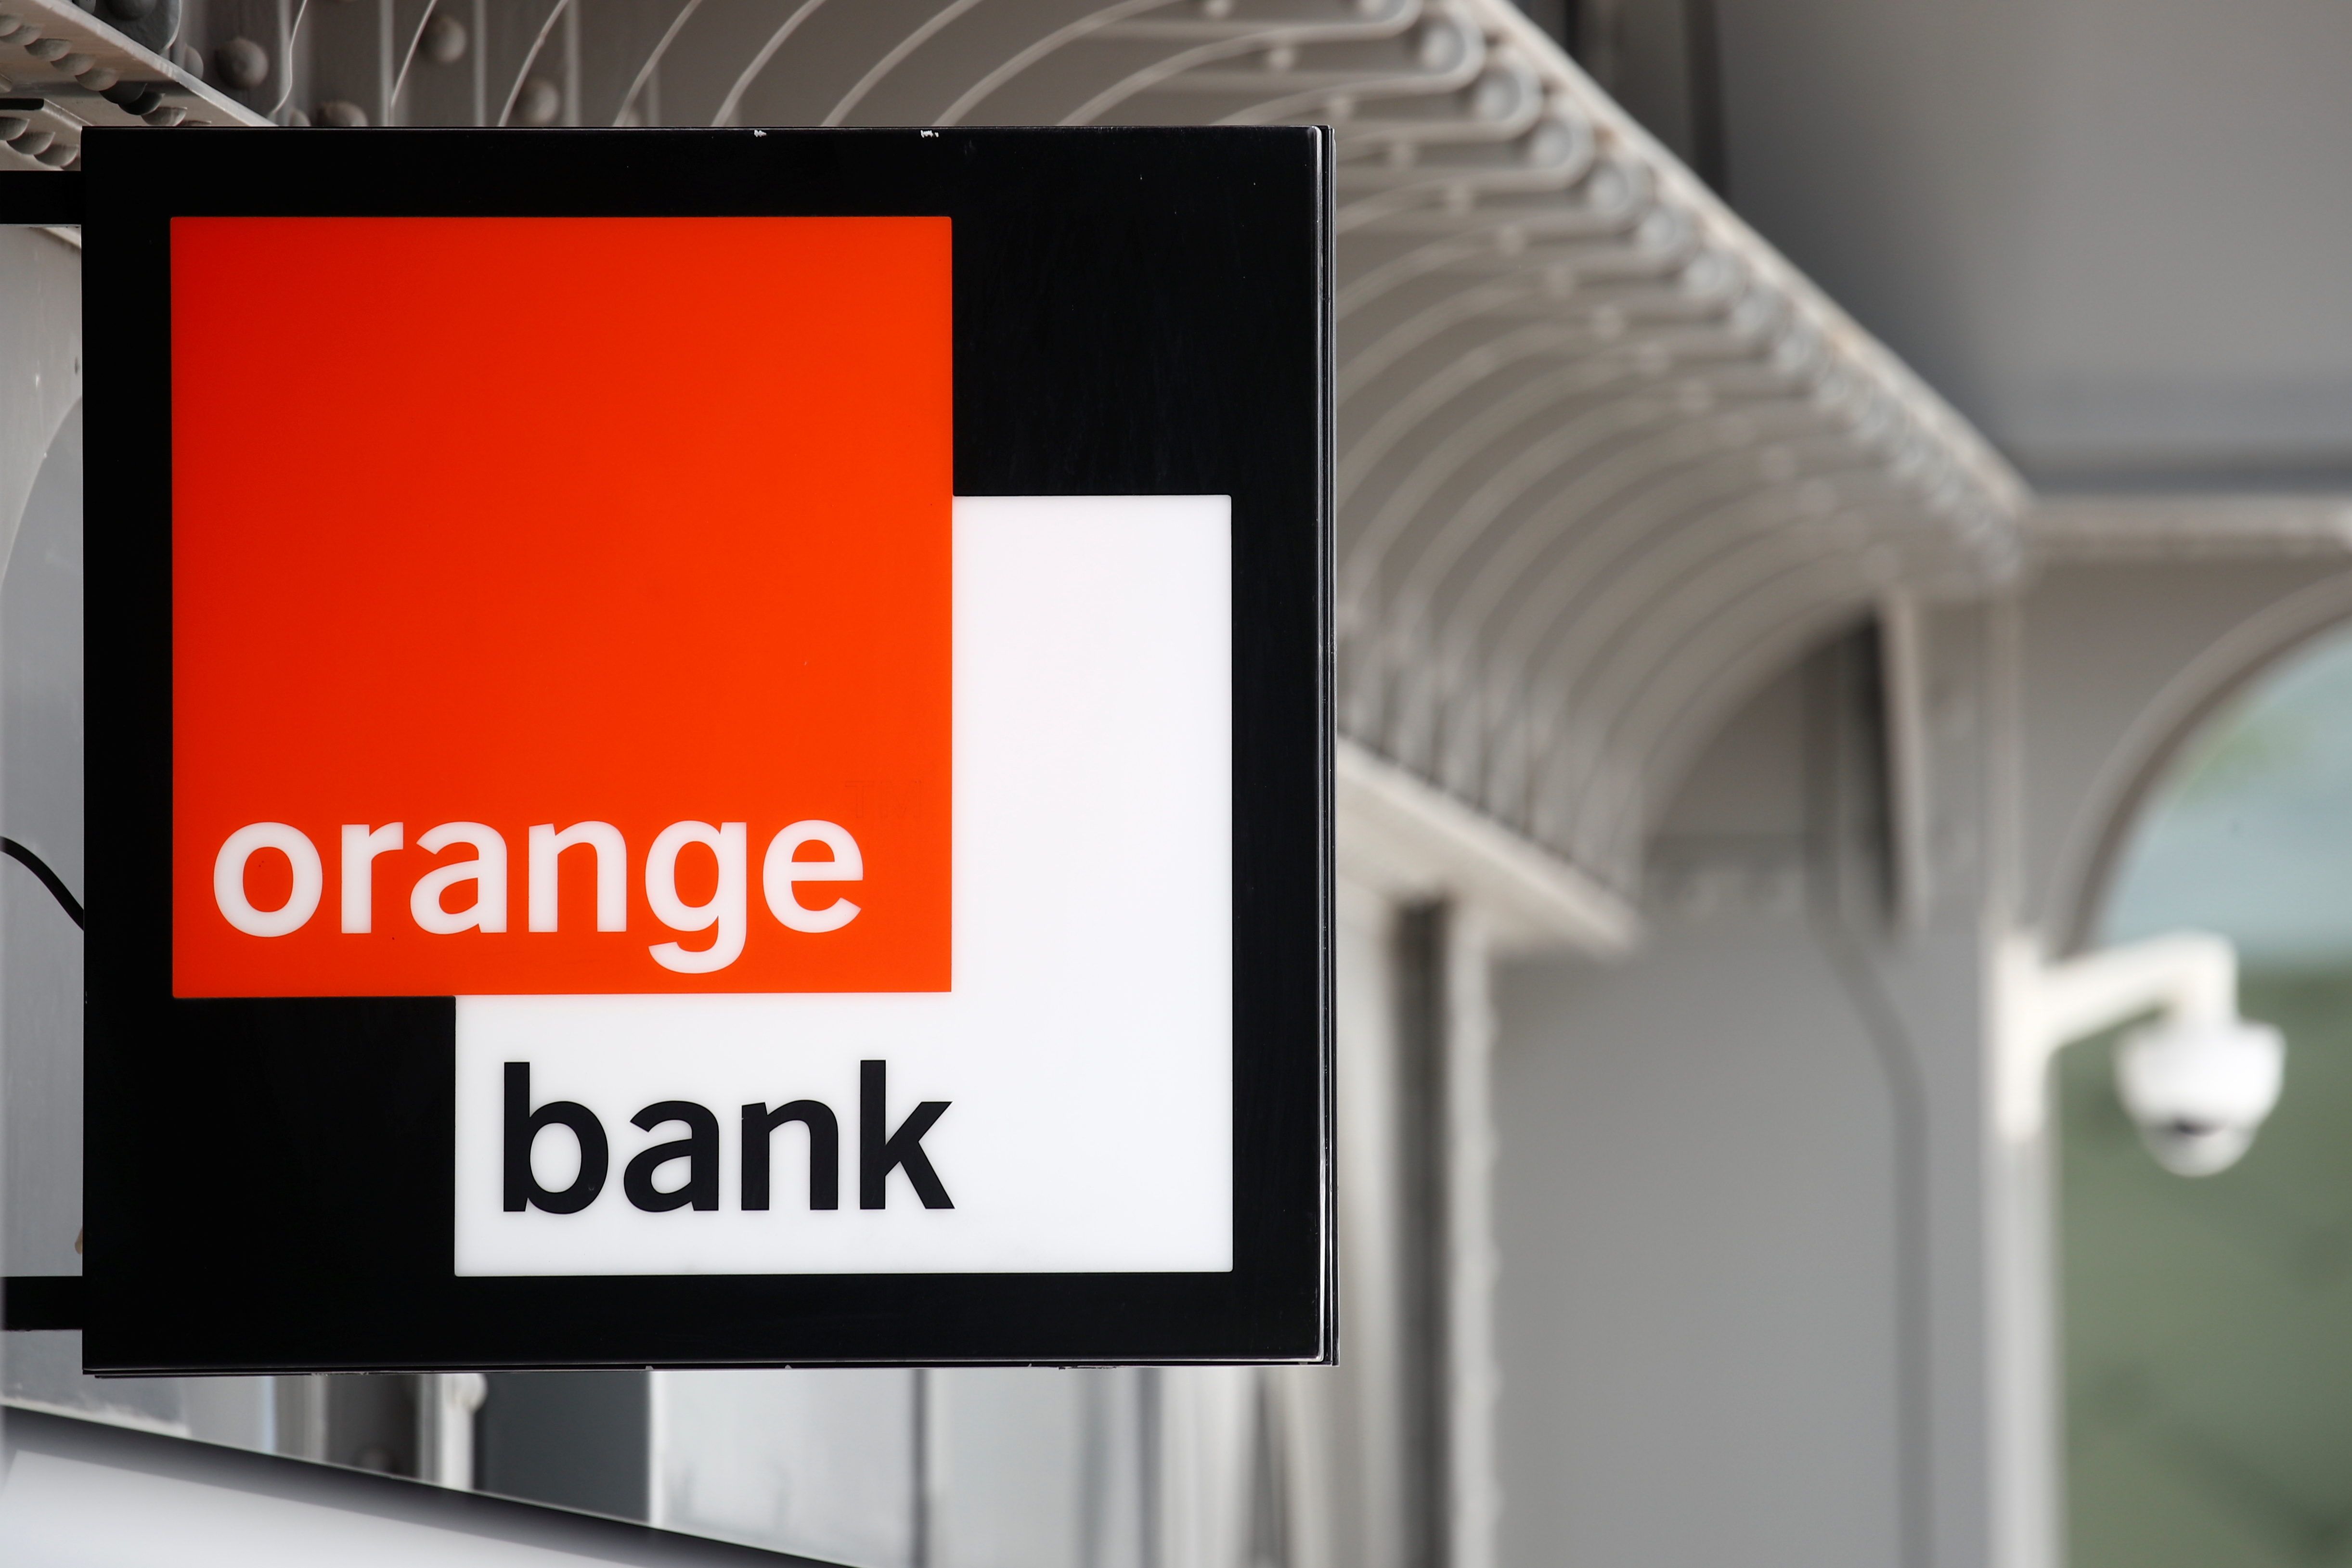 Orange met un terme à ses activités dans la banque de détail